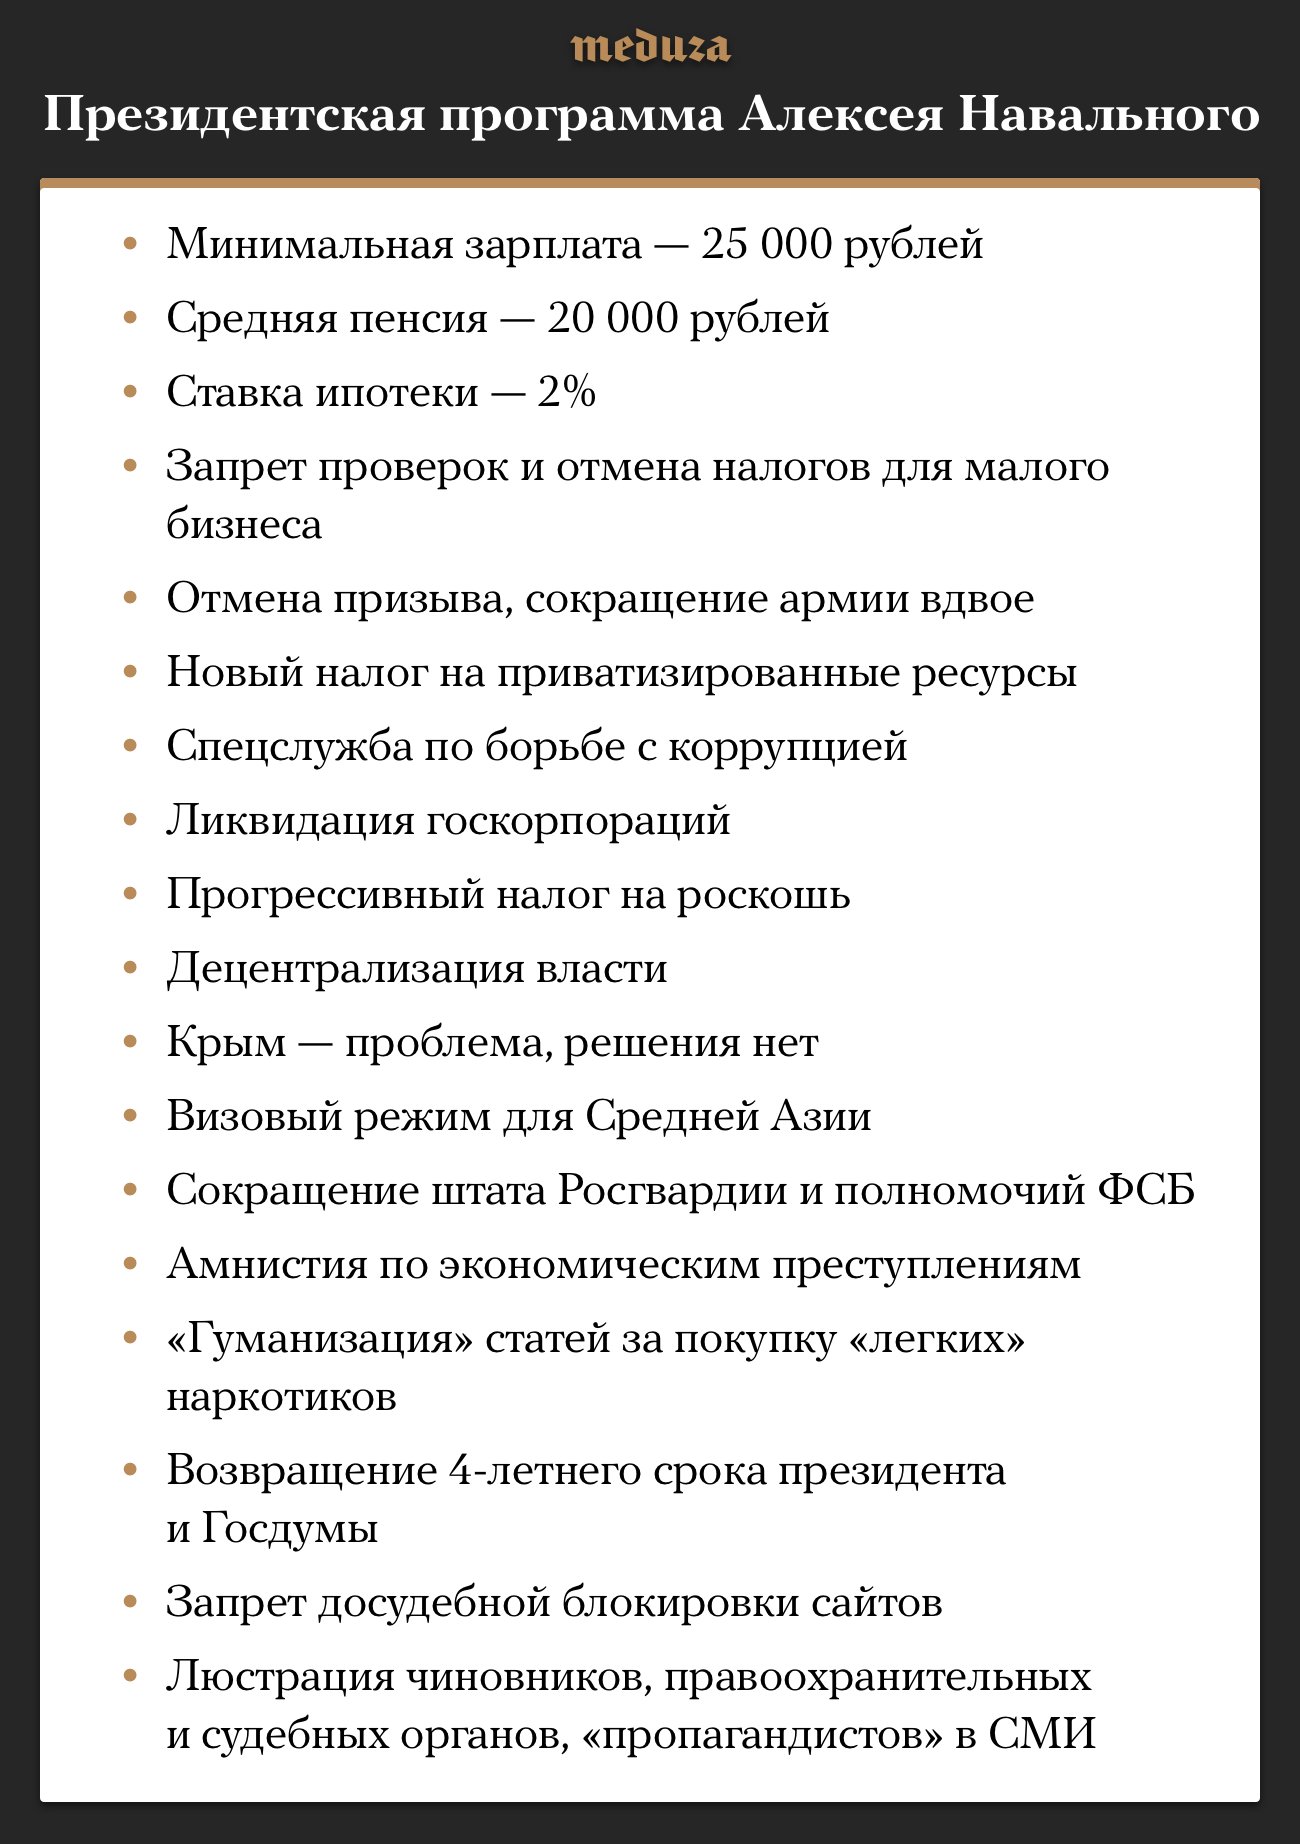 Предвыборная программа навального. Программа Навального. Президентская программа Алексея Навального 2018. Политическая программа Навального.